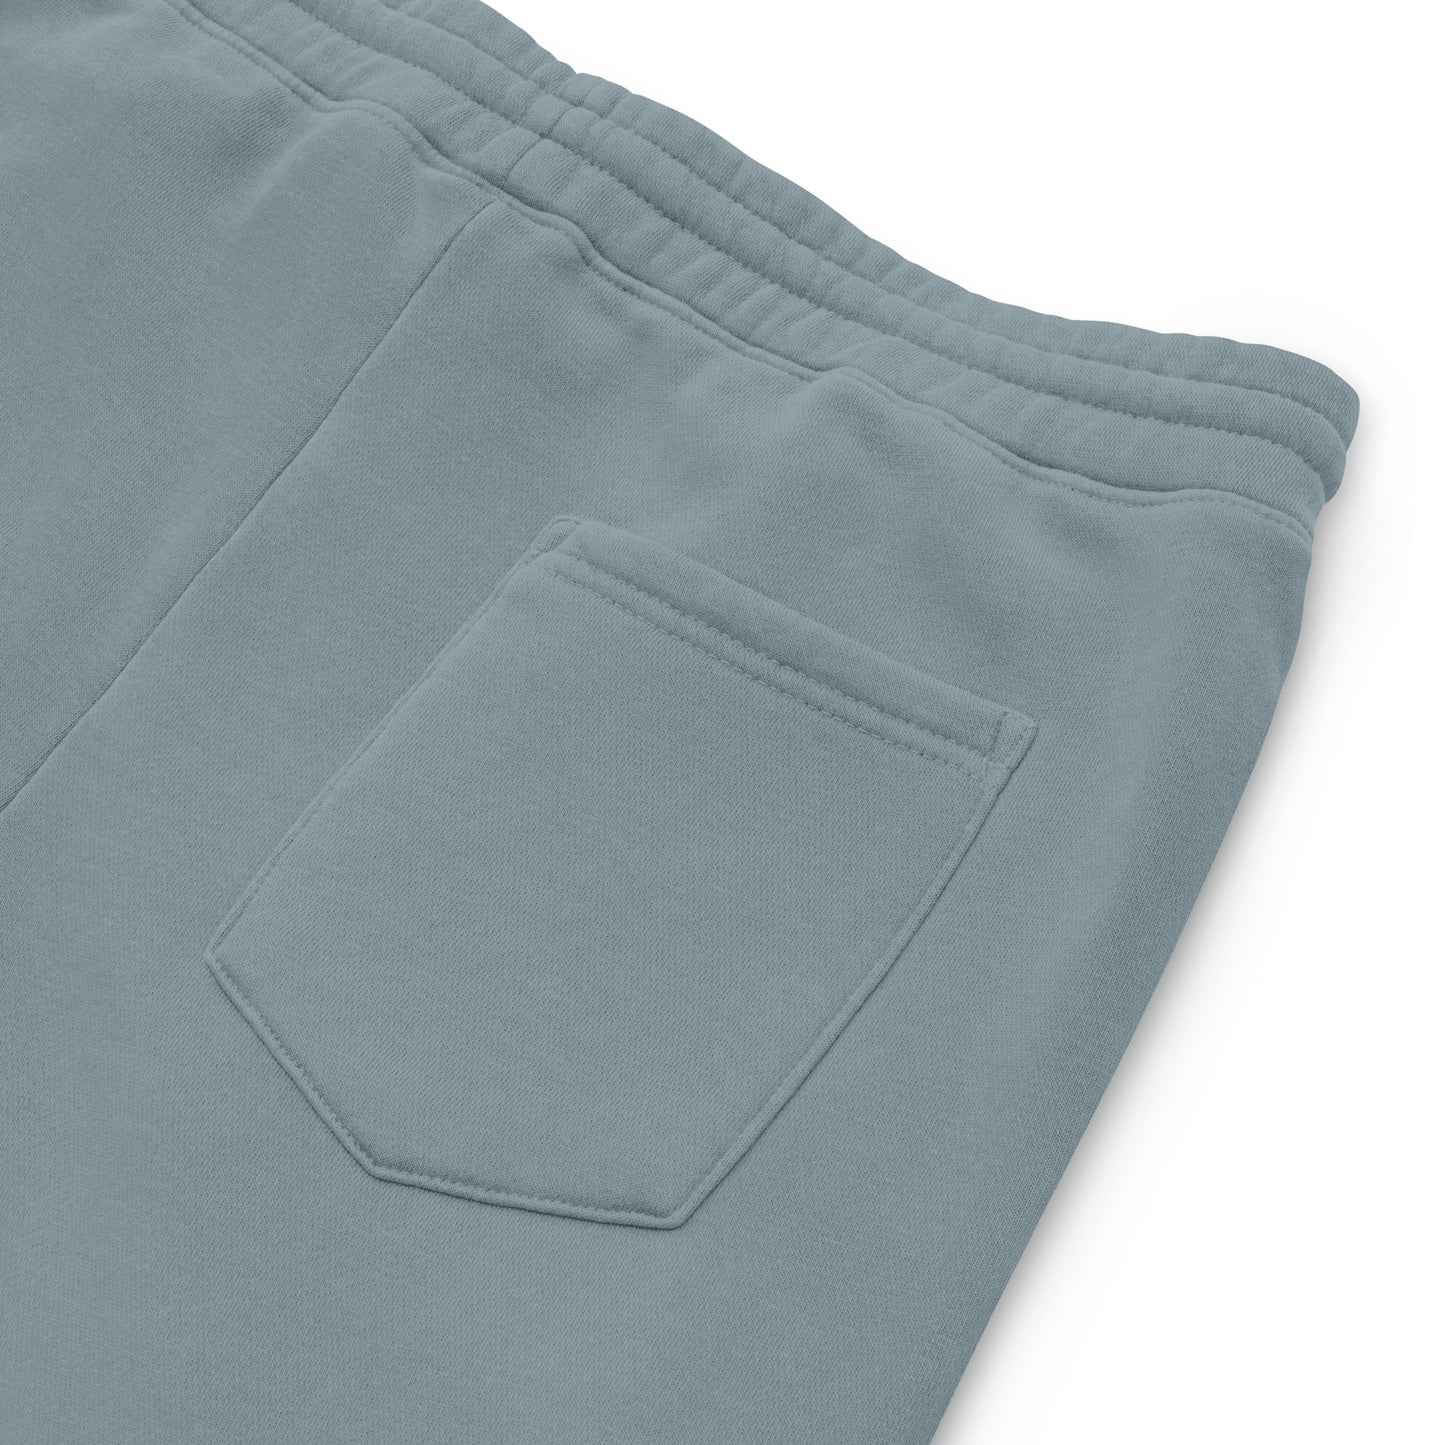 ZLB Unisex Pigment-Dyed Sweatpants